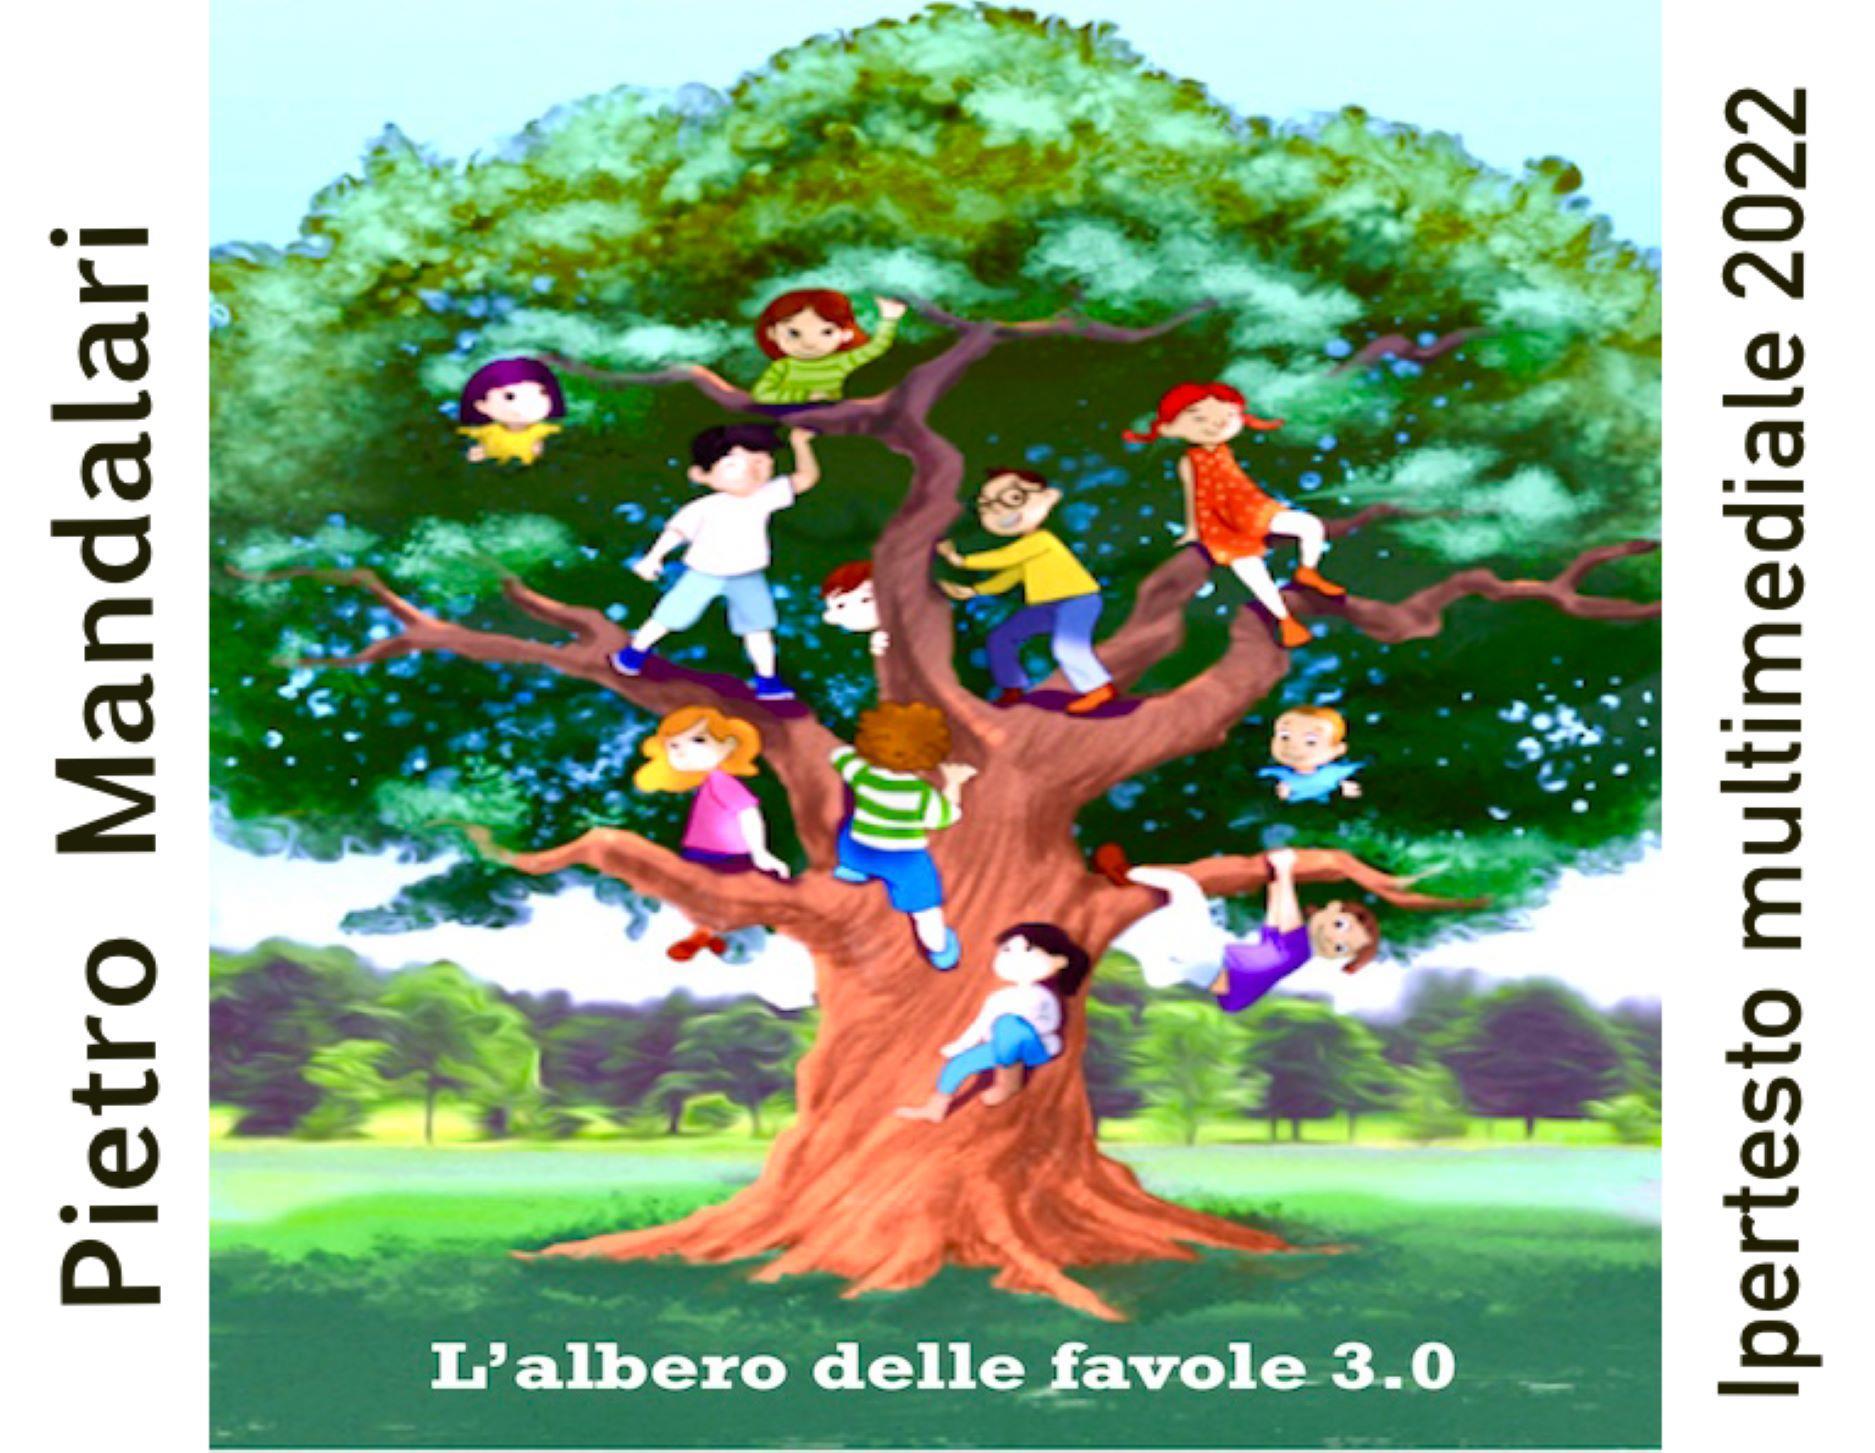 L'albero delle favole 3.0